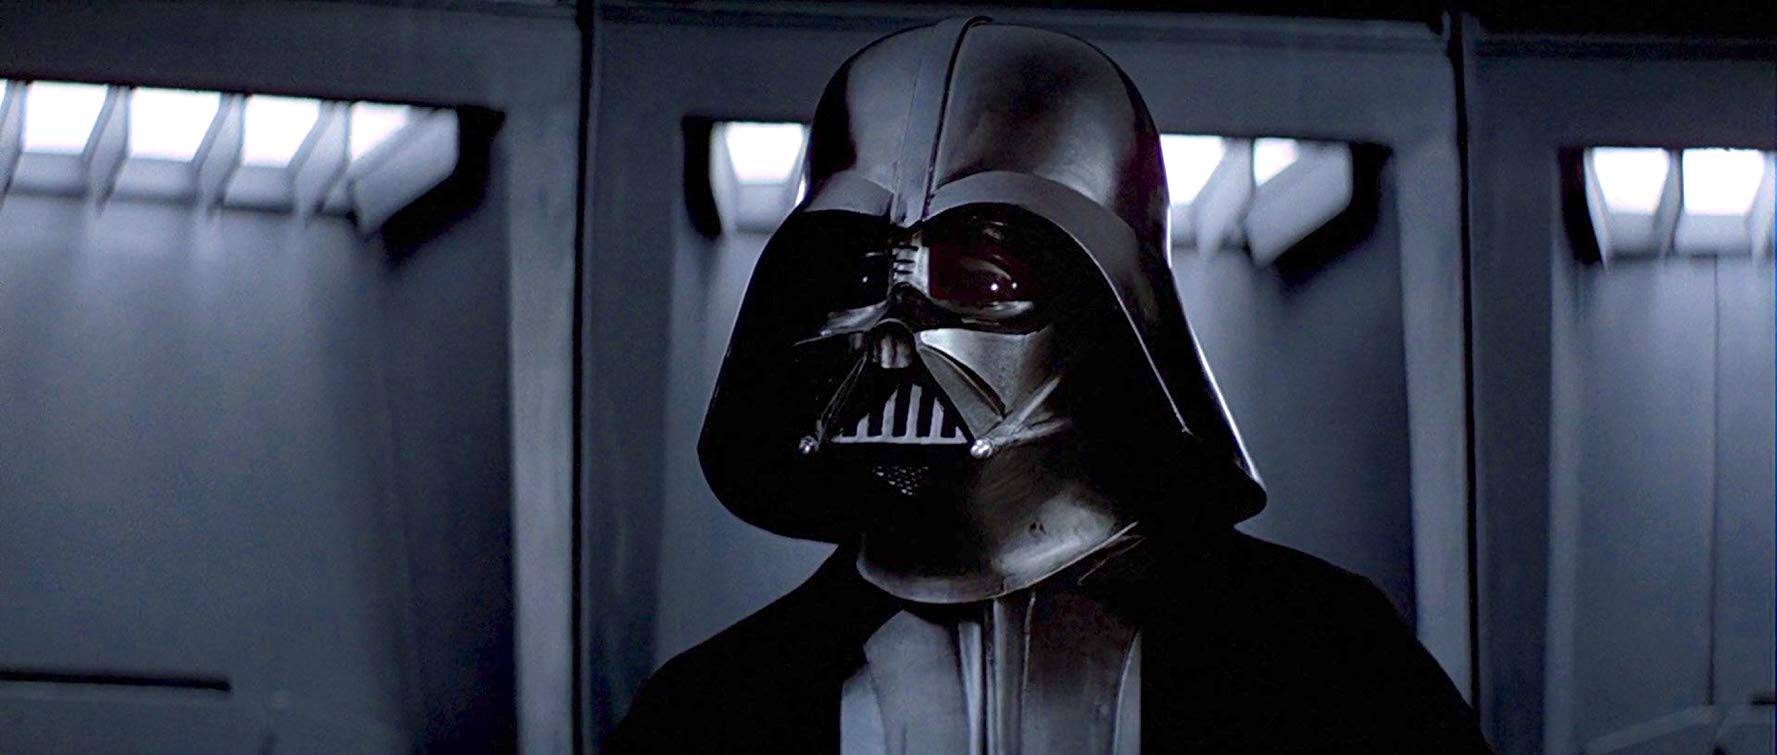 Kostim Darth Vadera prodaju na dražbi za 13 milijuna kuna